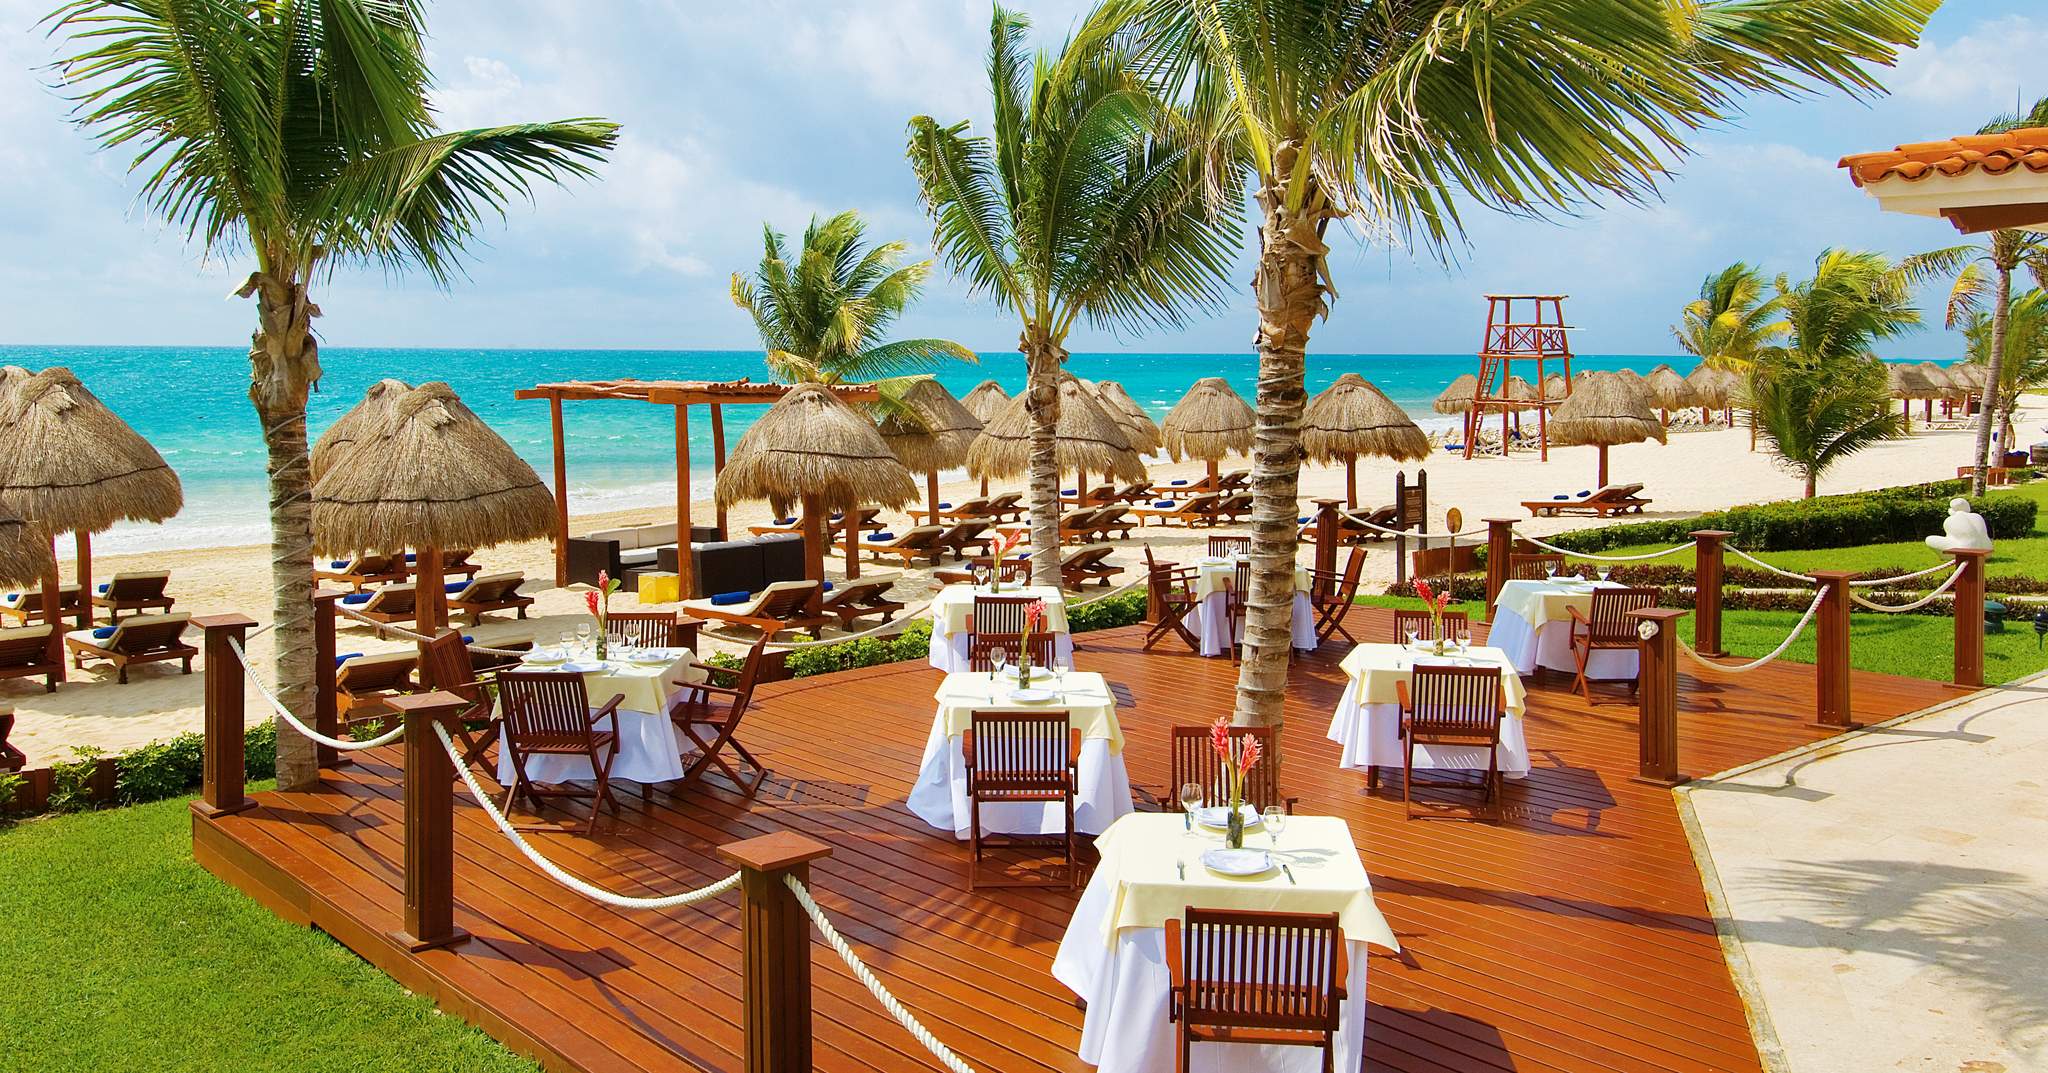 Secrets Capri Riviera Cancun In Playa Del Carmen Mexico All Inclusive Deals